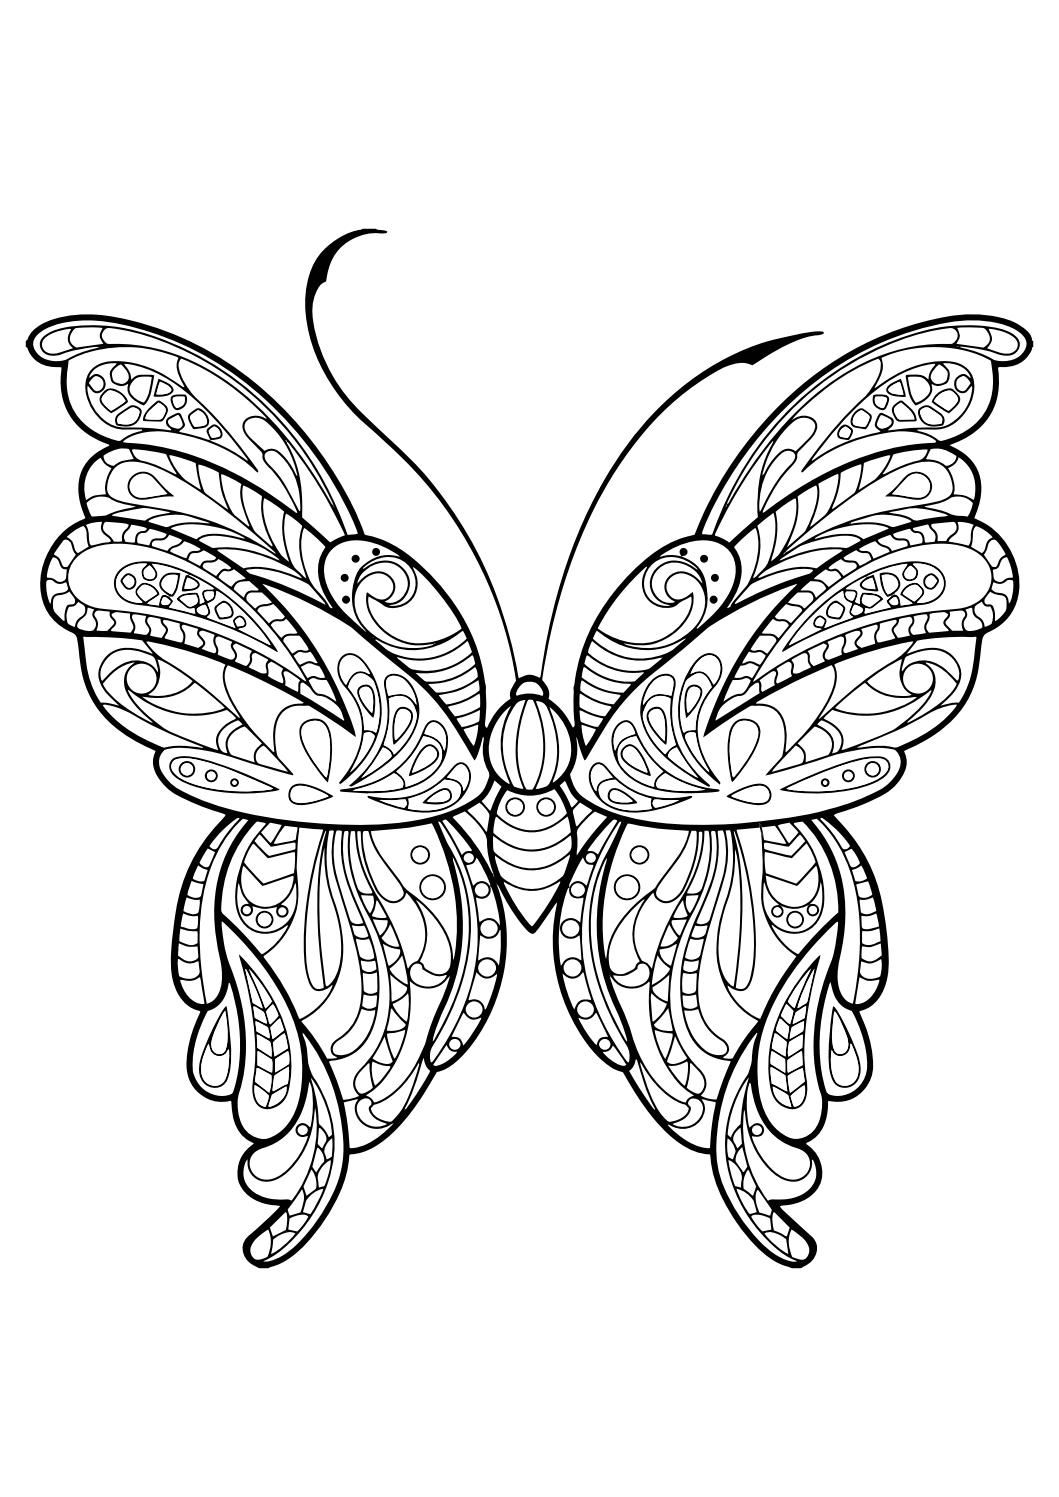 Trọn bộ những mẫu tranh tô màu con bướm dễ thương nhất cho bé   c3nguyentatthanhhpeduvn